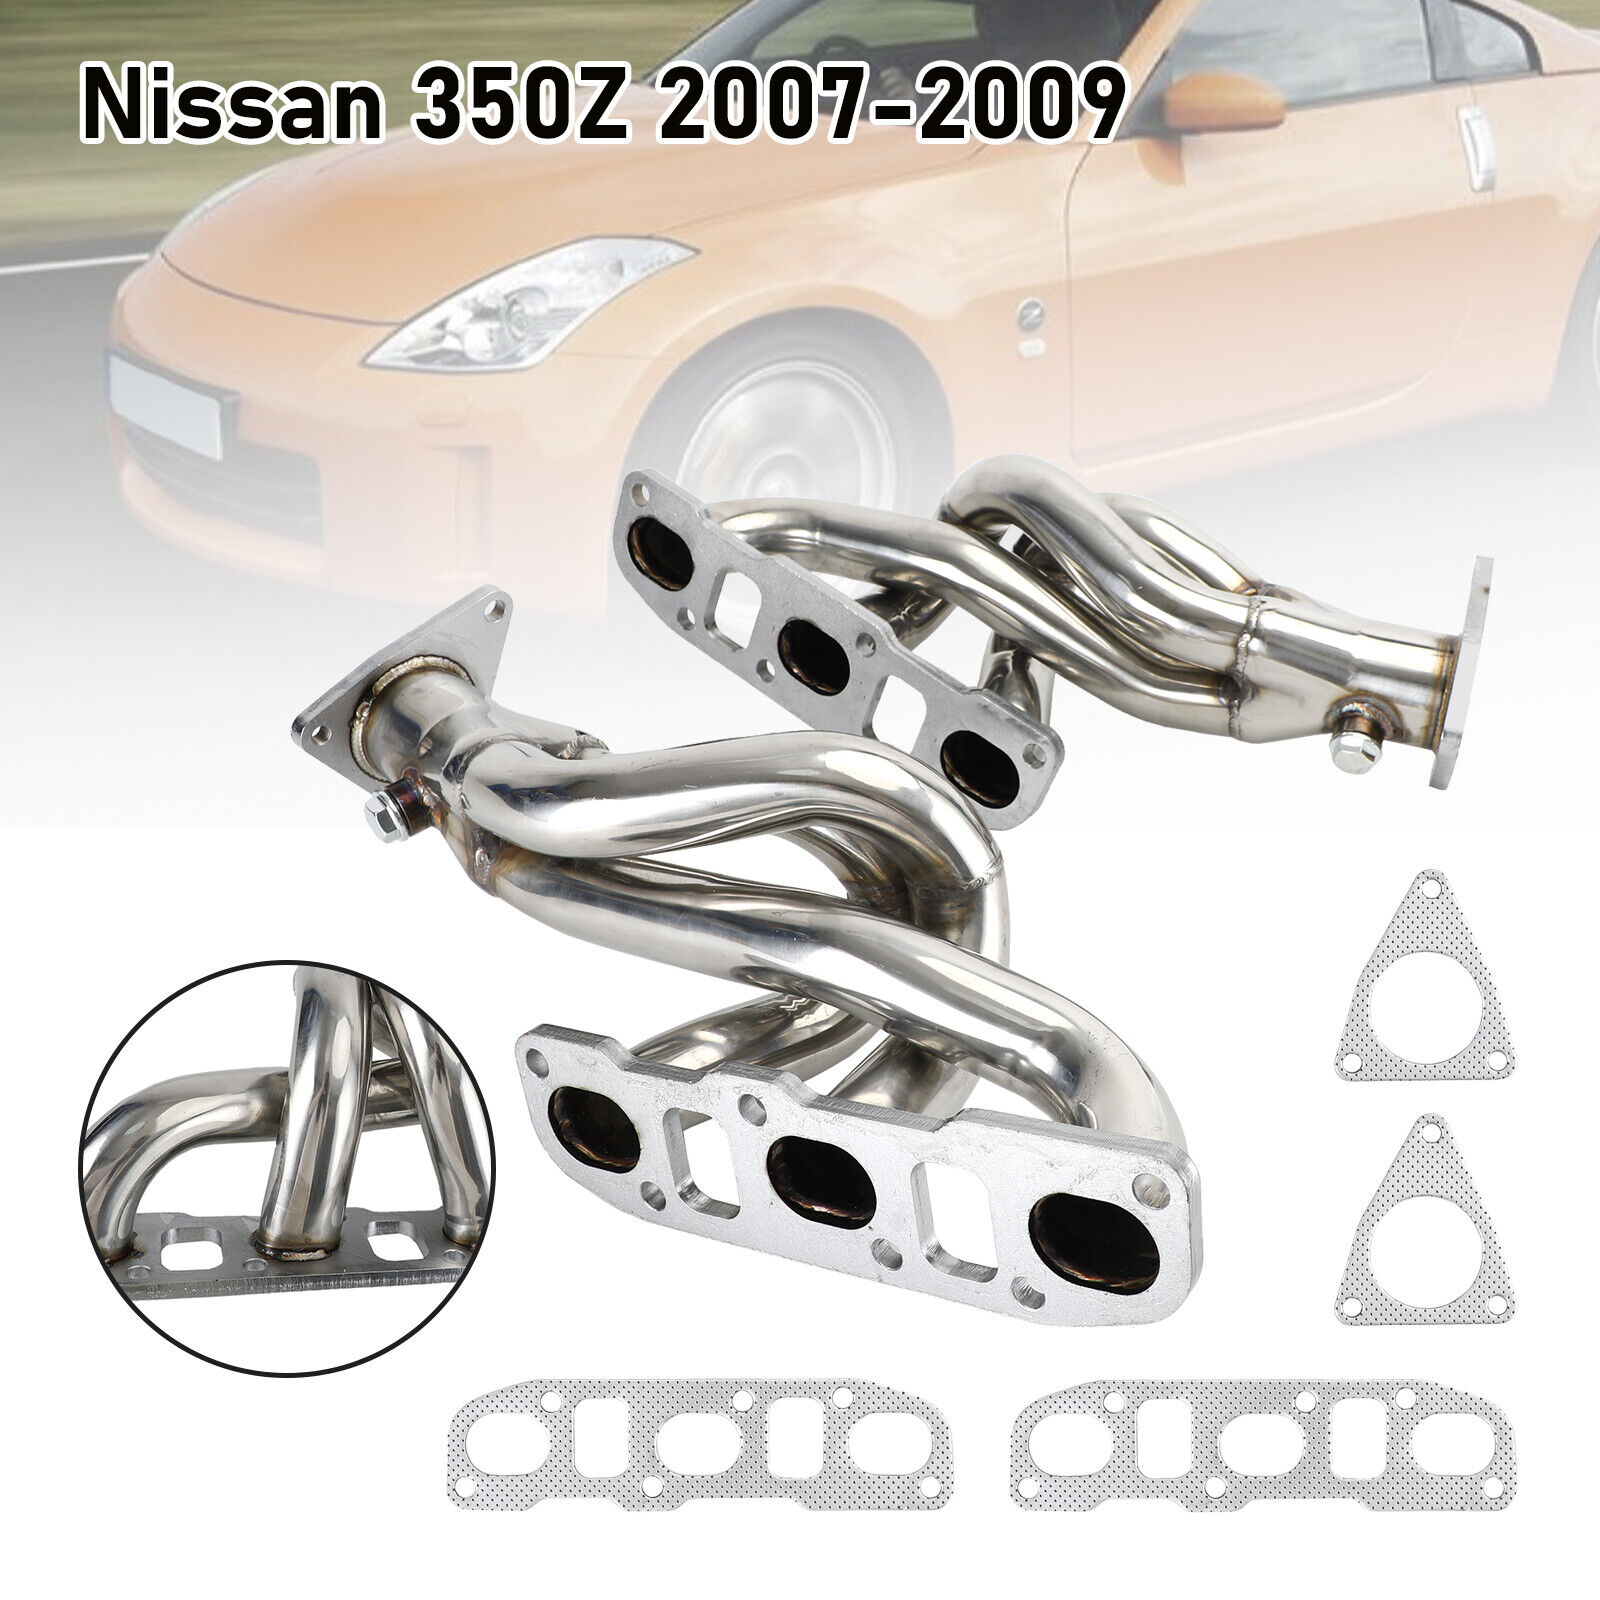 1× Stainless Exhaust Header Kit For Nissan 350Z/370Z & Infiniti G37 3.7 08-13 US